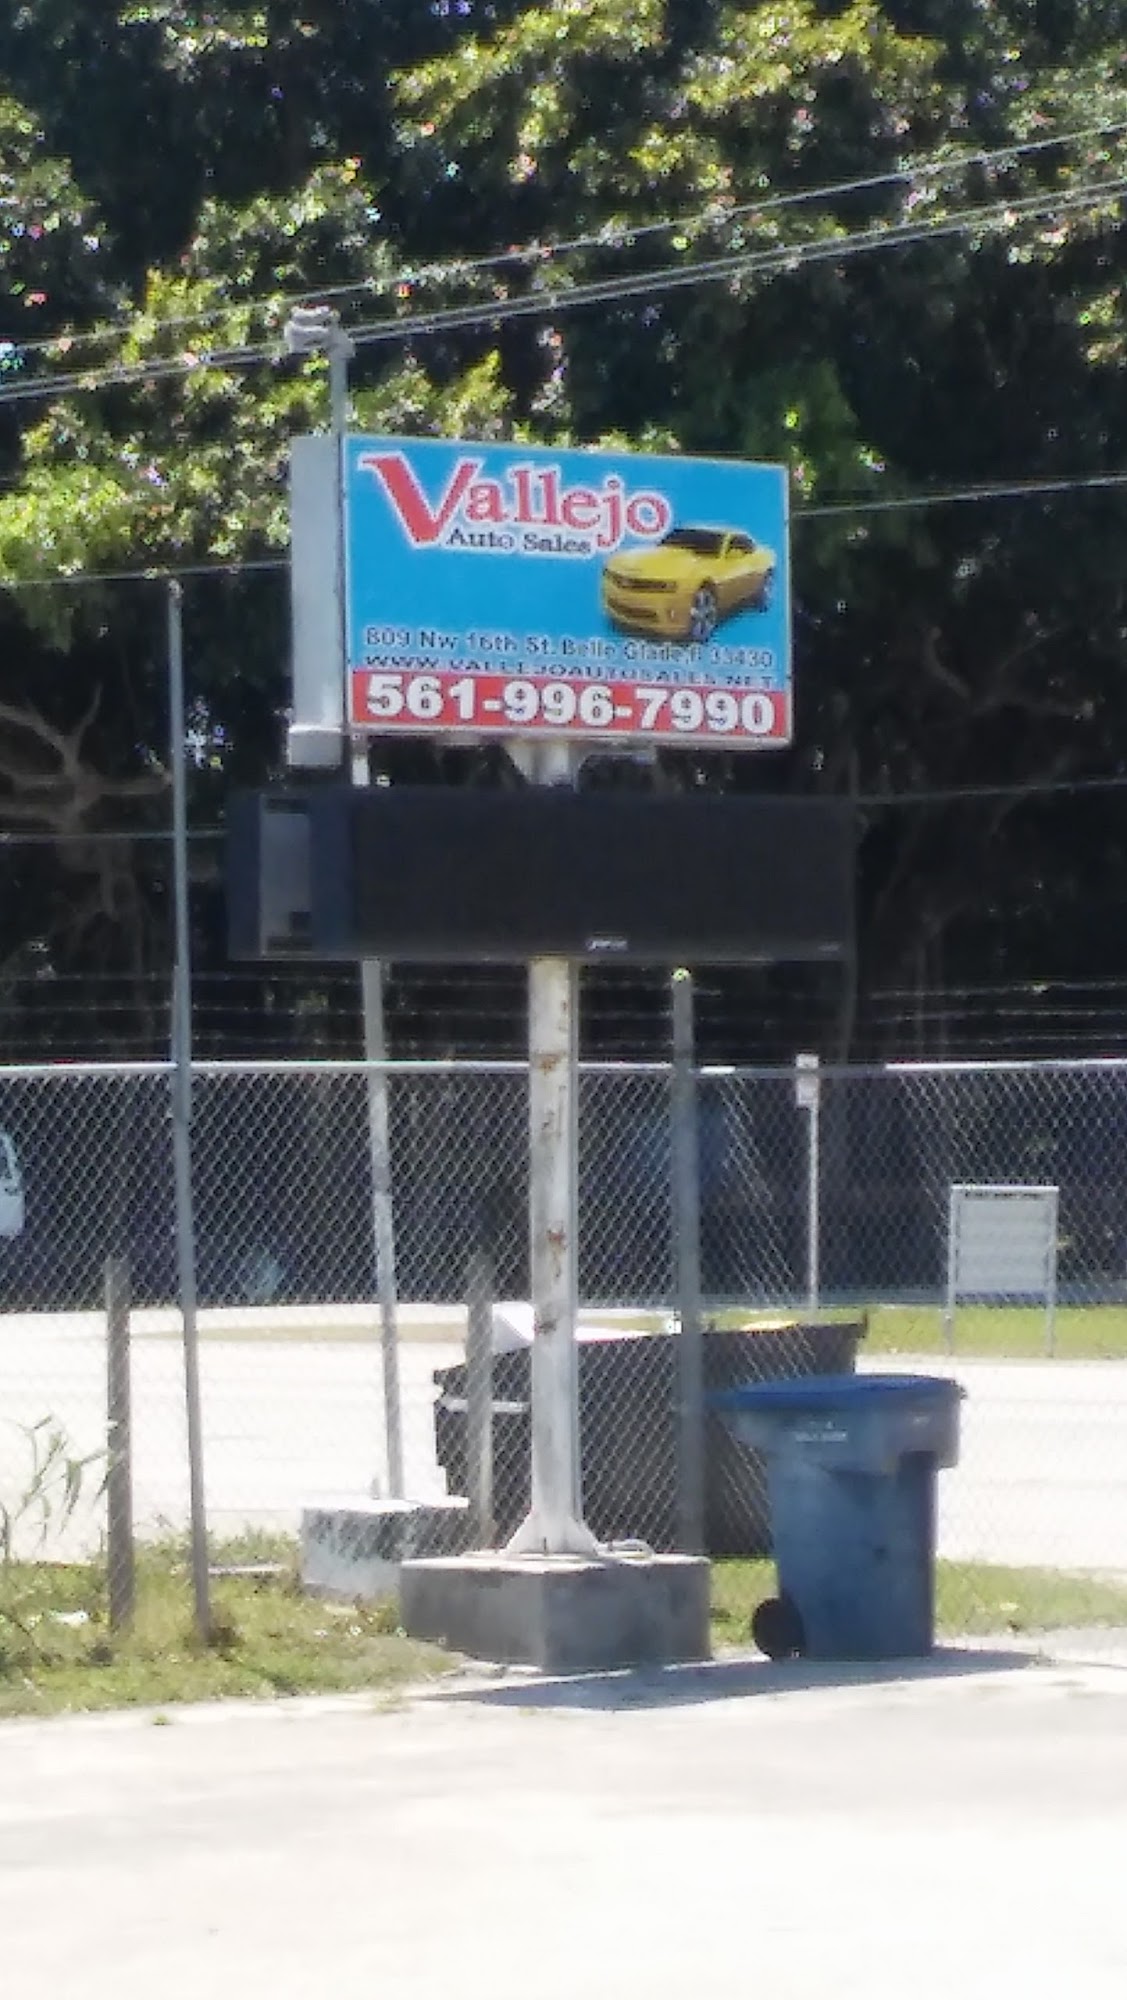 Vallejo Auto Sales